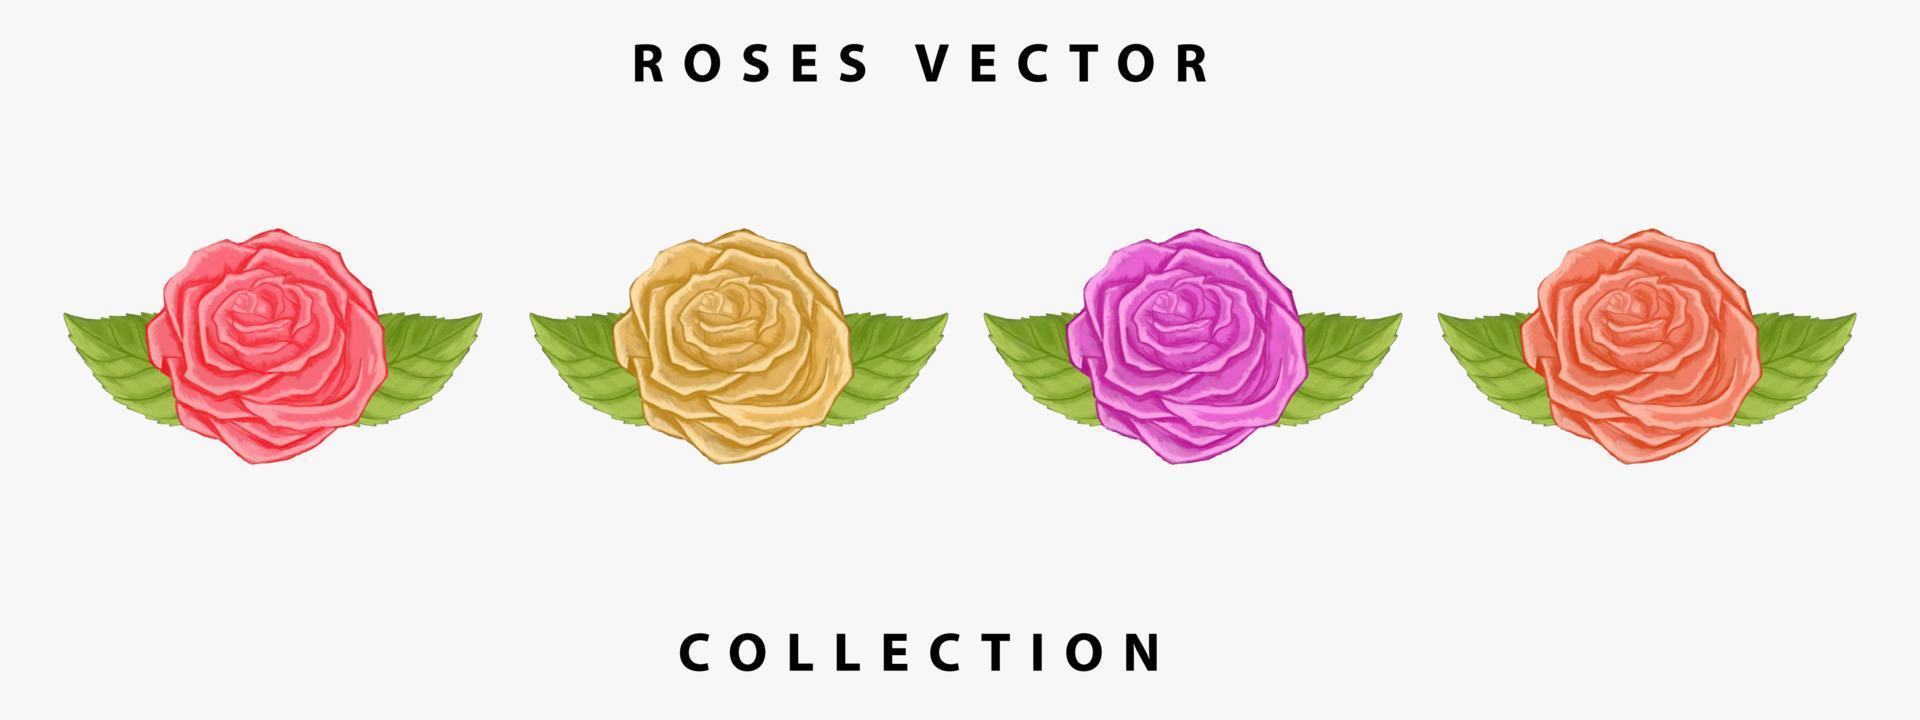 collection de vecteurs de roses. roses aquarelles dessinées à la main. conception de vecteur de roses